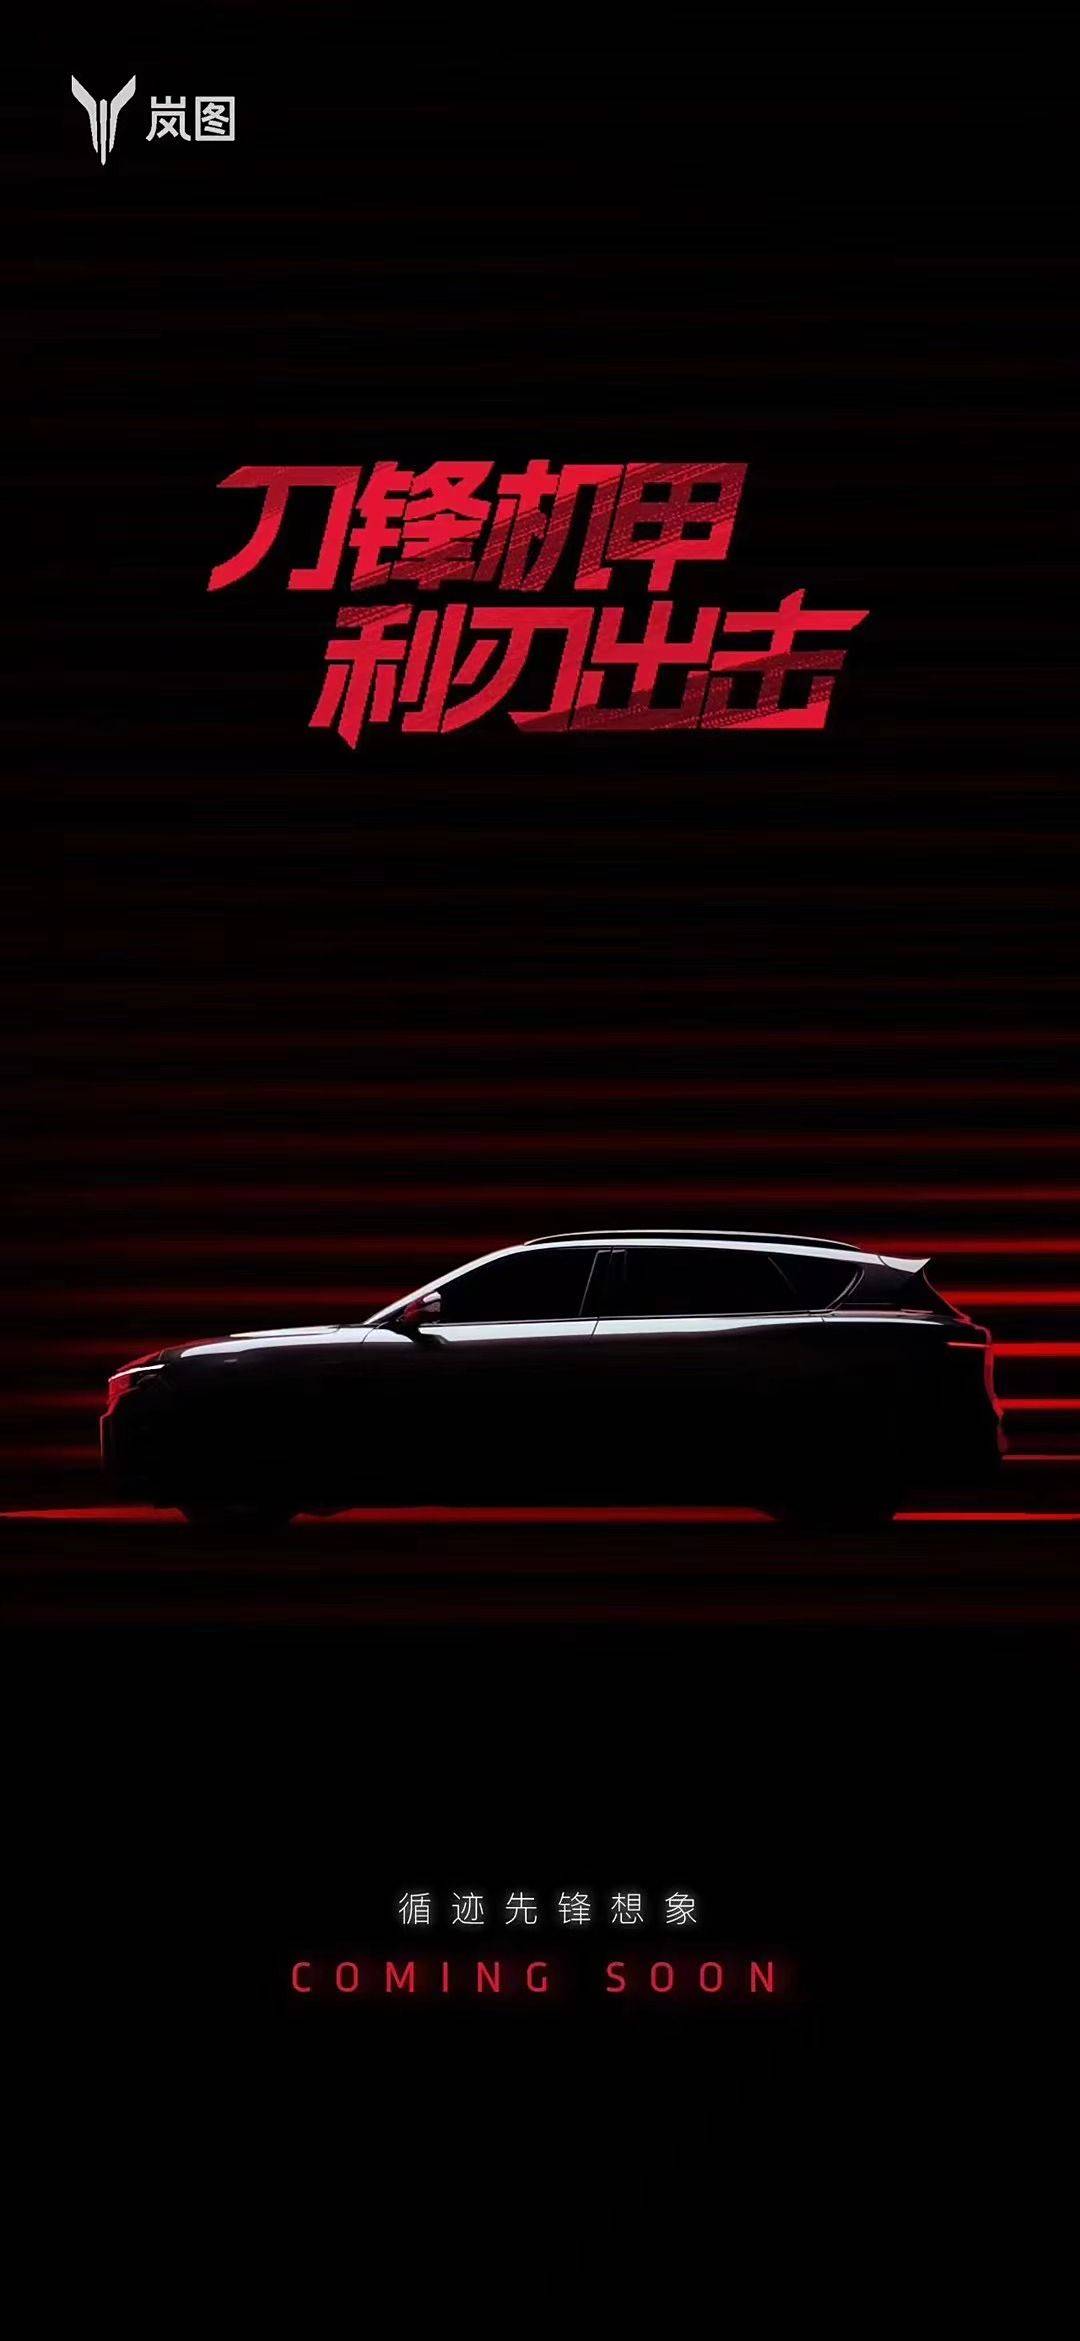 或全新名图车型将于5月23日亮相_搜狐汽车_ Sohu.com。